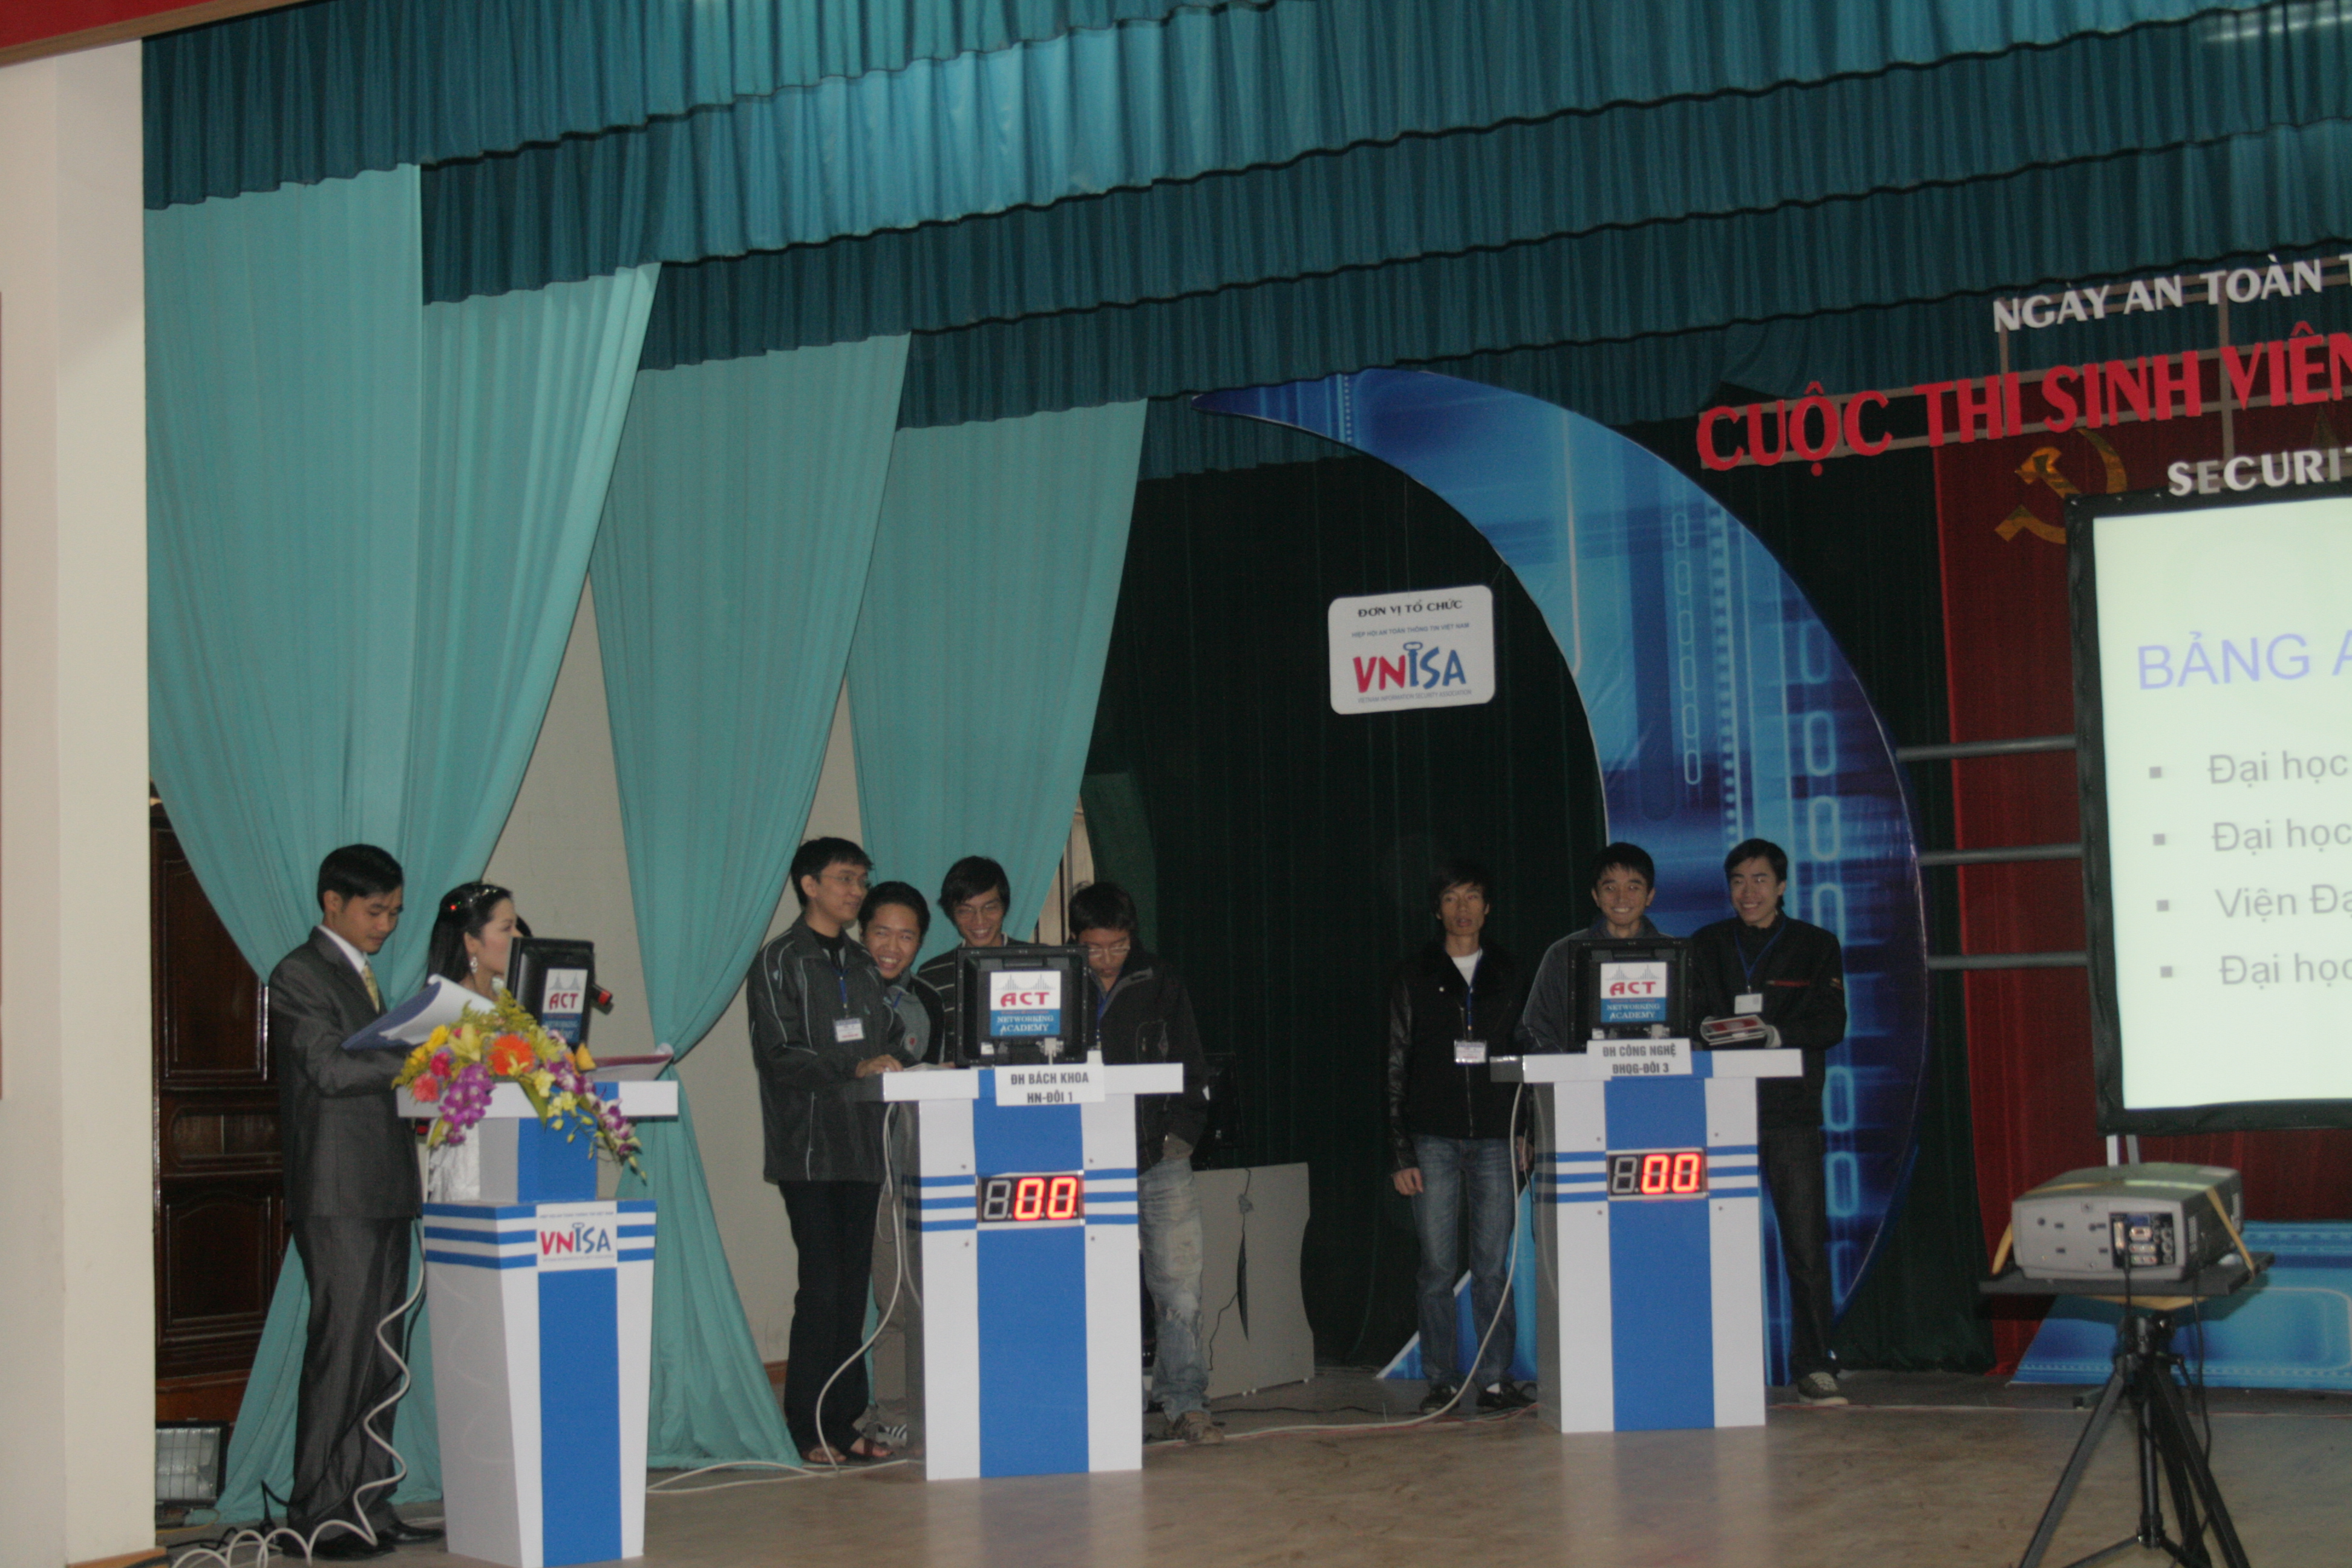 Quang cảnh cuộc thi Sinh viên với An toàn thông tin 2009 tại Hội trường Học viện Kỹ thuật Mật mã, Hà Nội.